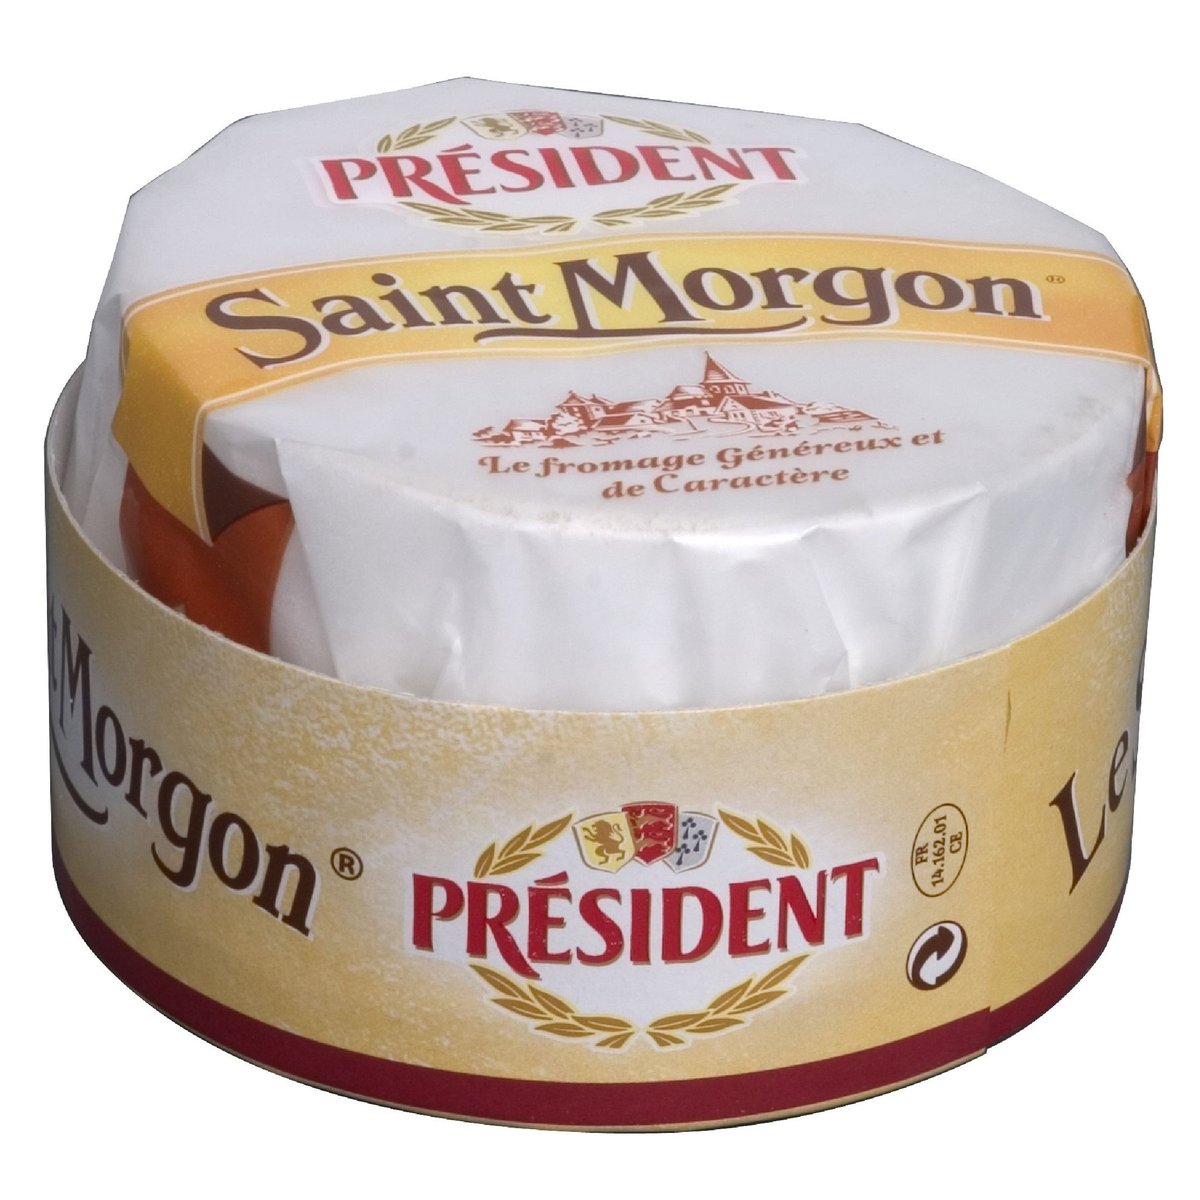 Président Saint Morgon